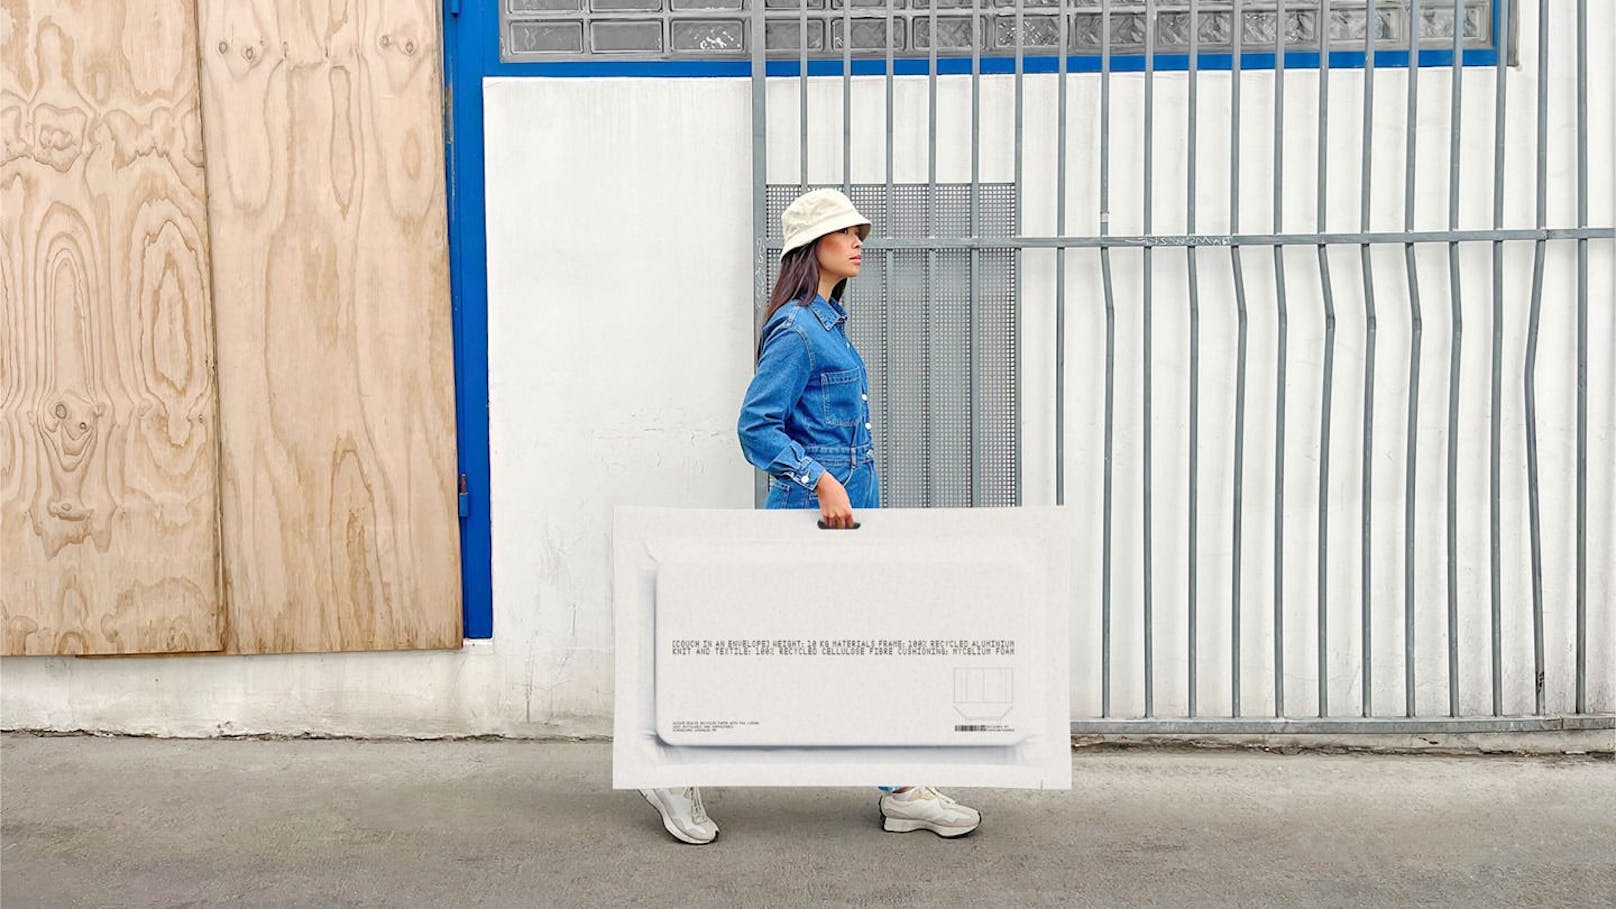 IKEA entwirft Couch, die du im Kuvert tragen kannst